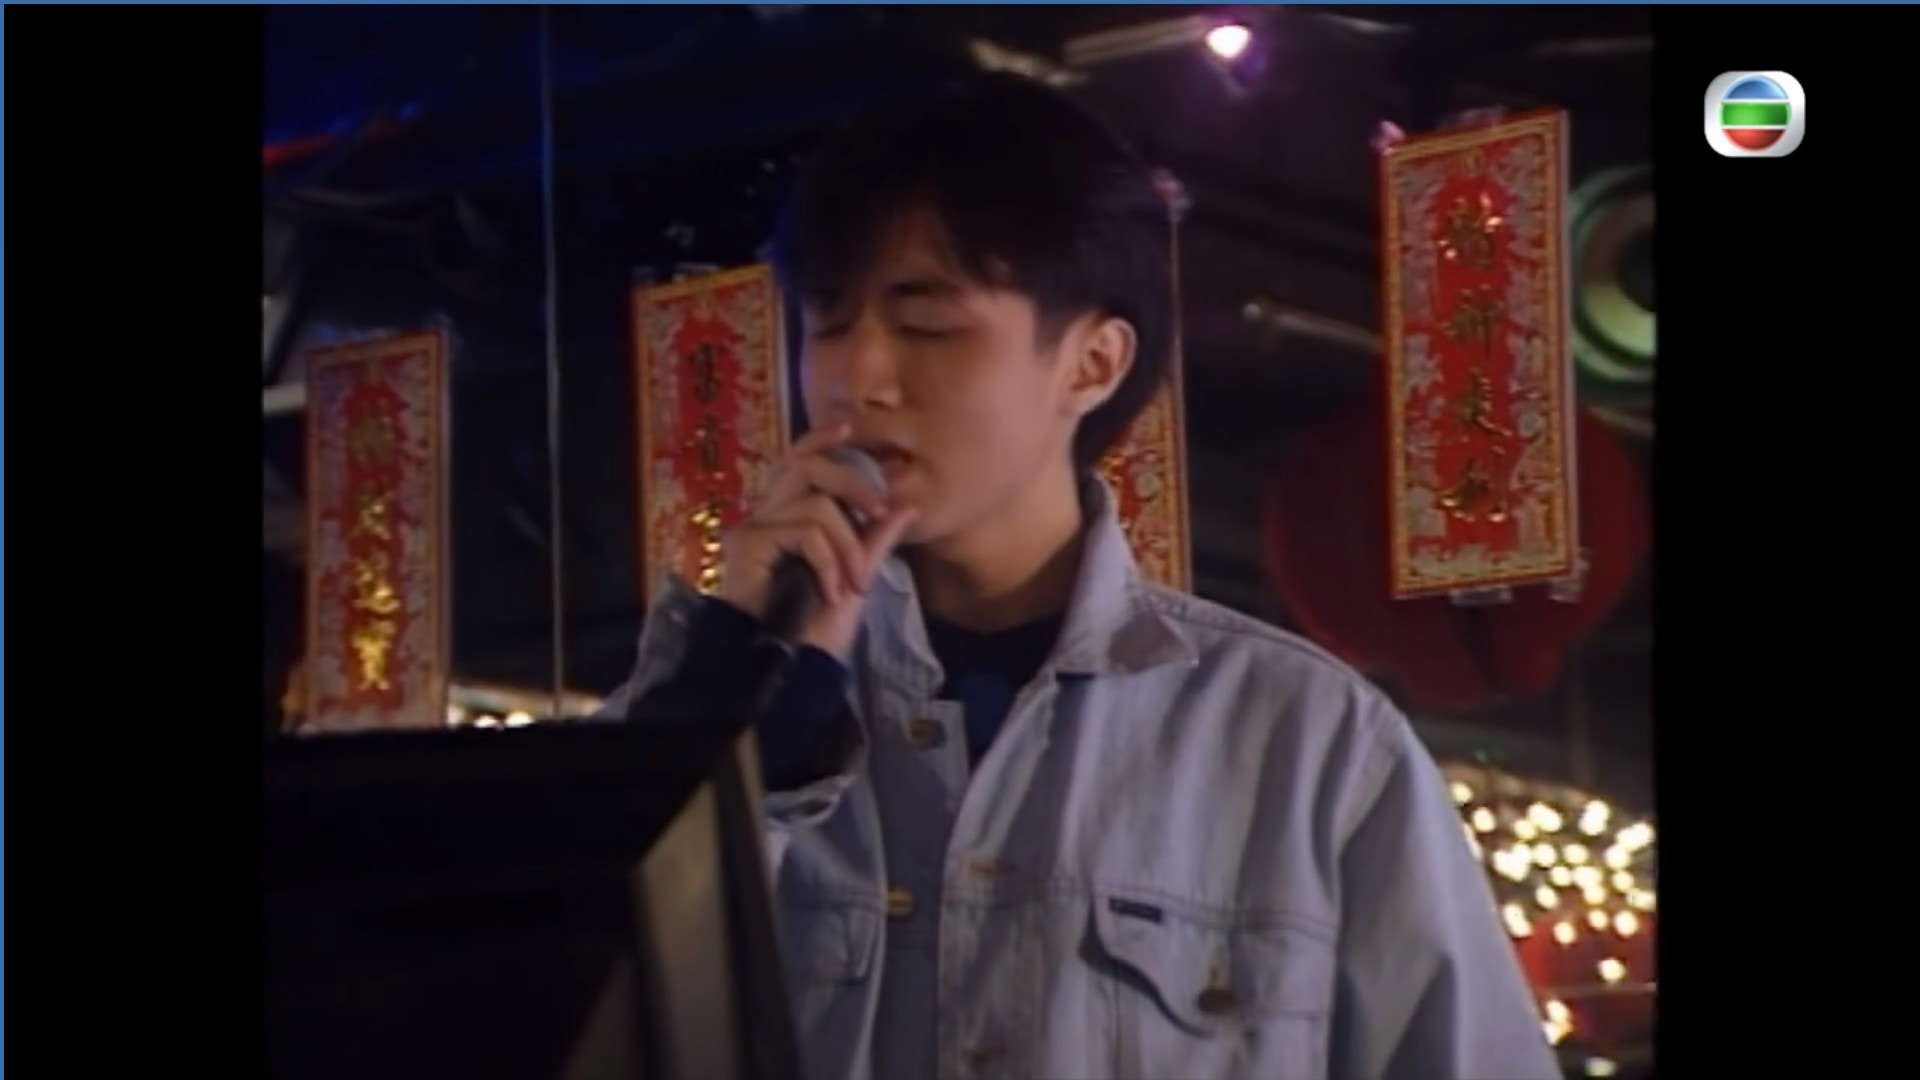 壹號皇庭 19歲古巨基演酒廊歌手過鏡基仔 我真係現場唱㗎 香港01 即時娛樂